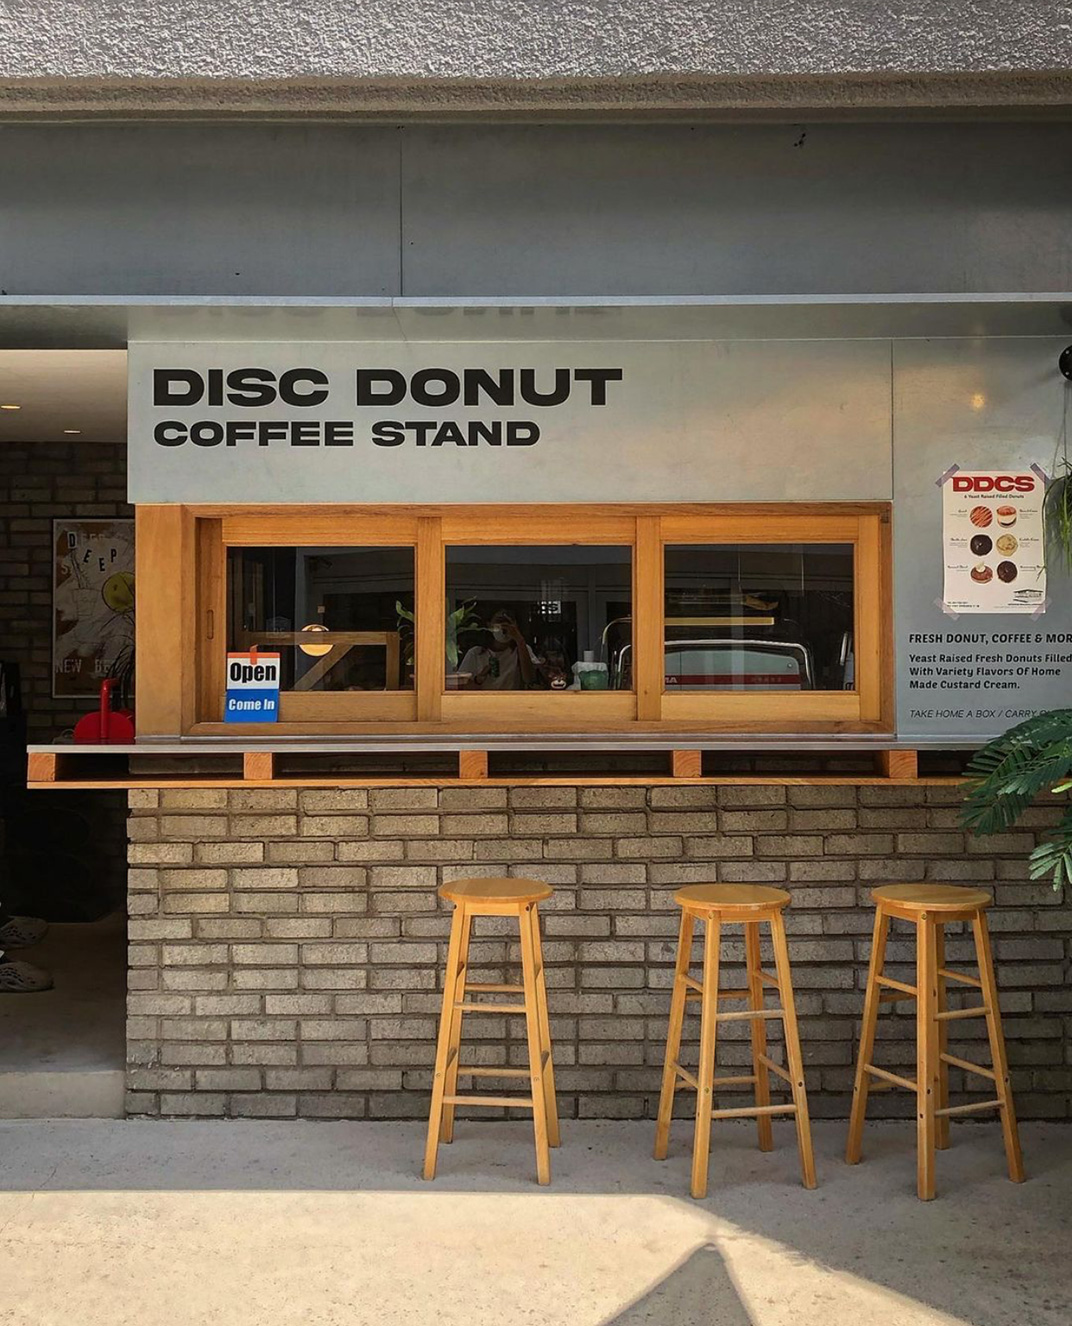 甜甜圈 咖啡店设计 韩国 上海 首尔 咖啡店 甜甜圈 砖 木饰面 不锈钢 logo设计 vi设计 空间设计